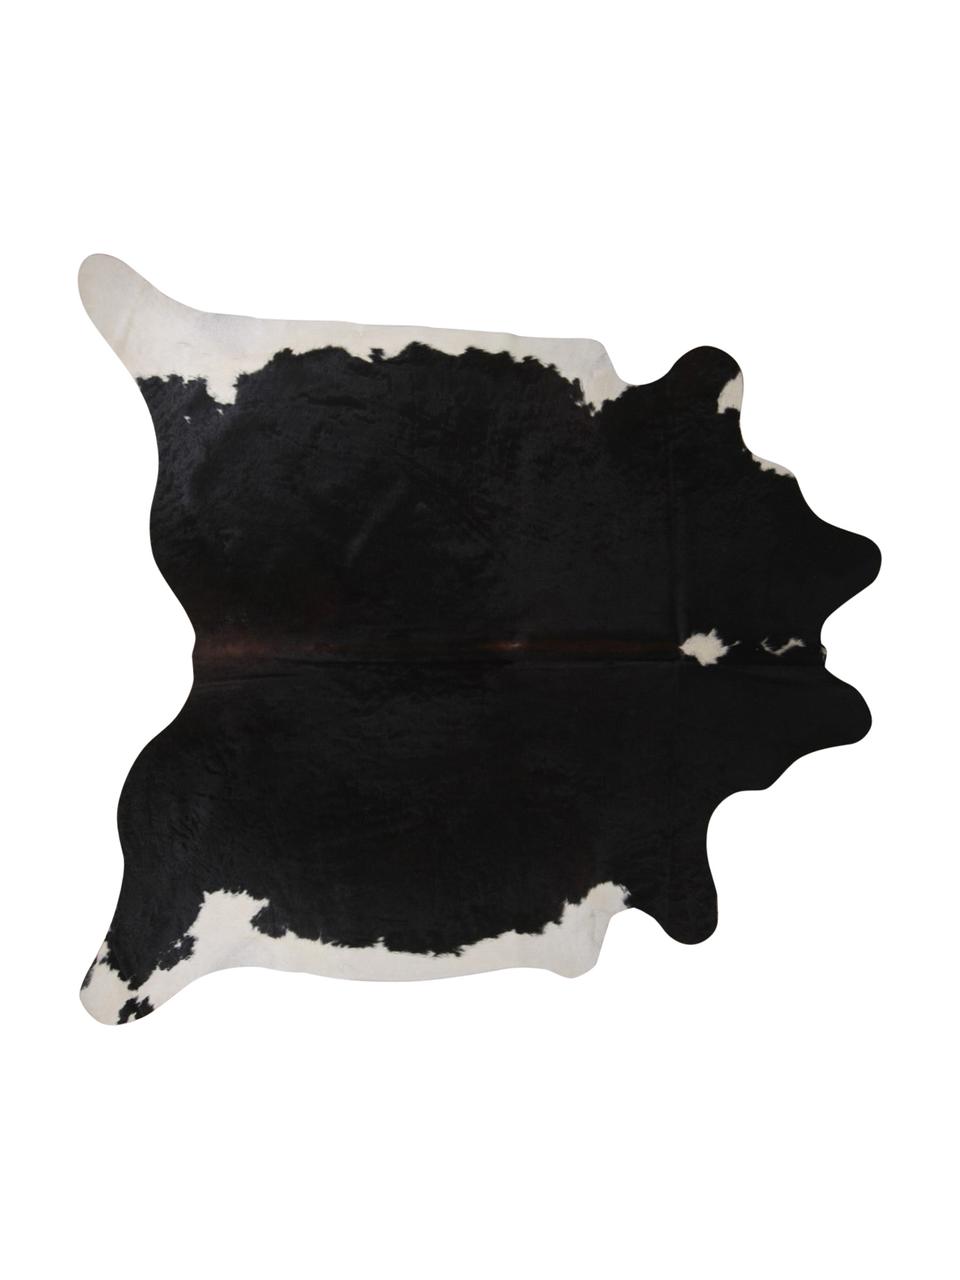 Koeienhuid Pisces, Koeienhuid, Wit met zwarte vlekken, Unieke koeienhuid 967, 160 x 180 cm